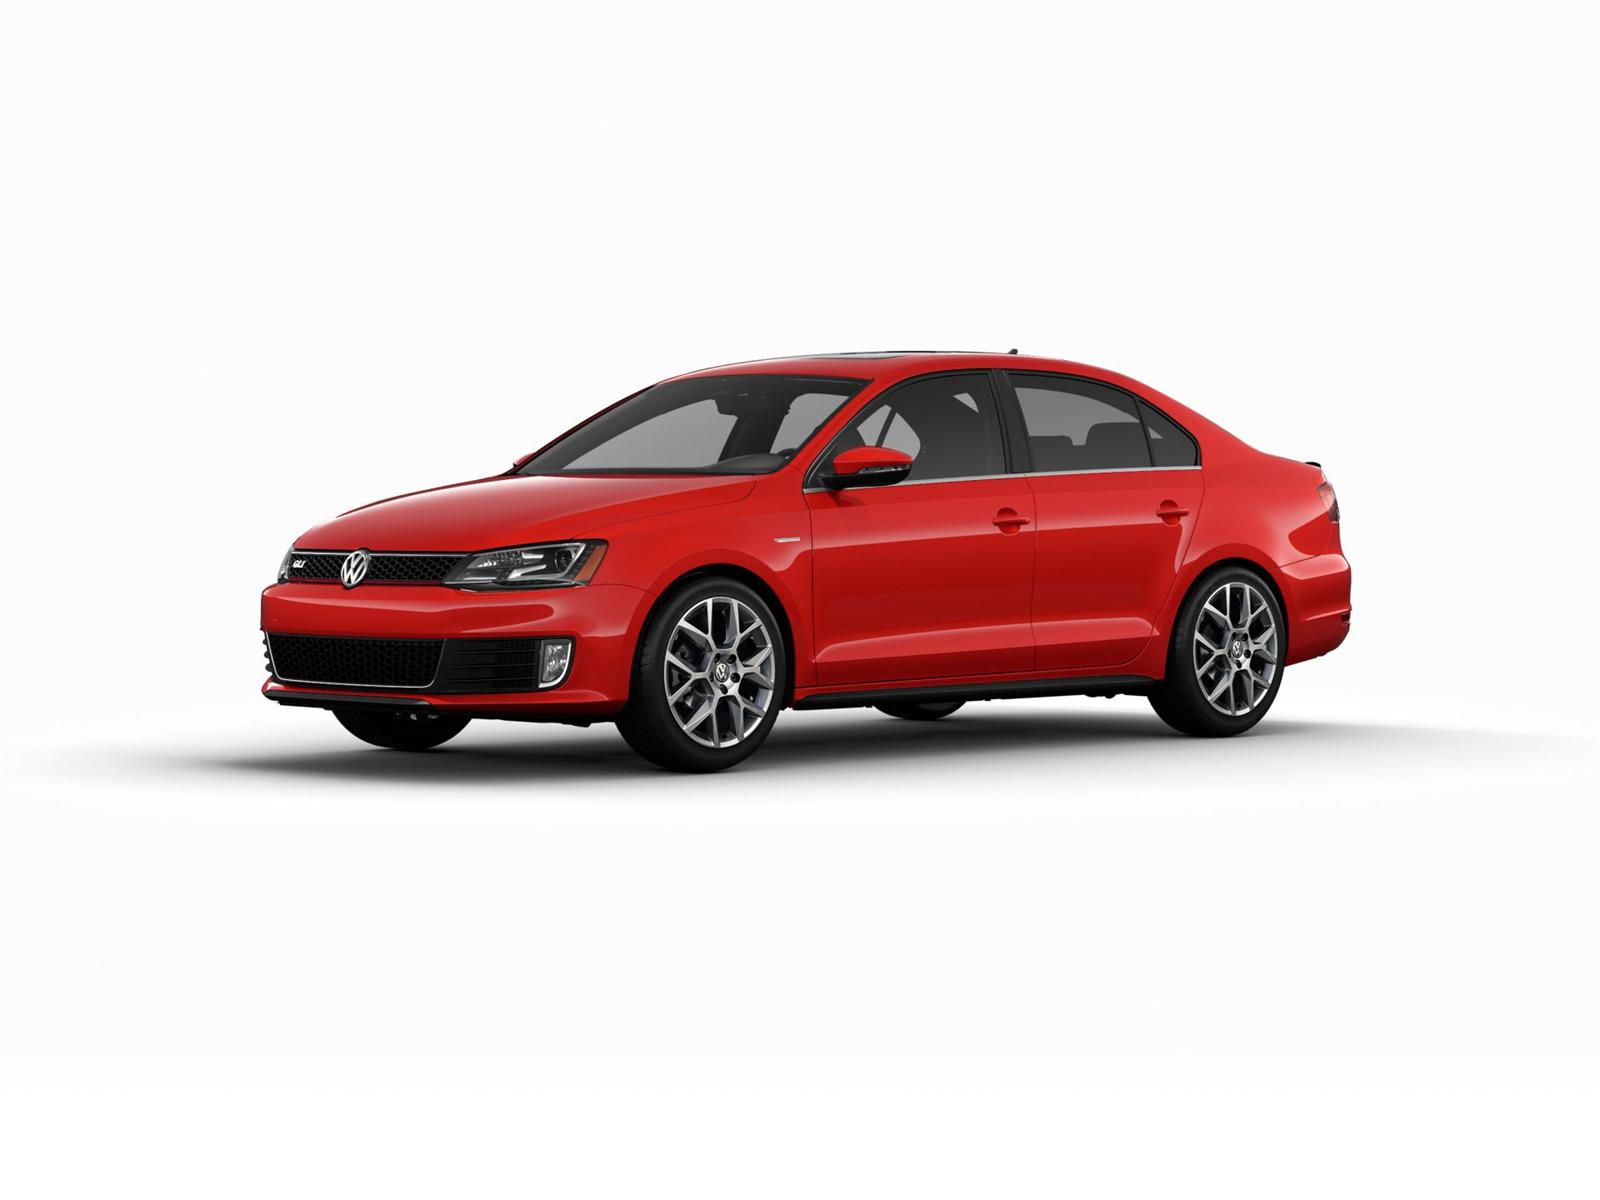 2014 Volkswagen Jetta GLI Edition 30